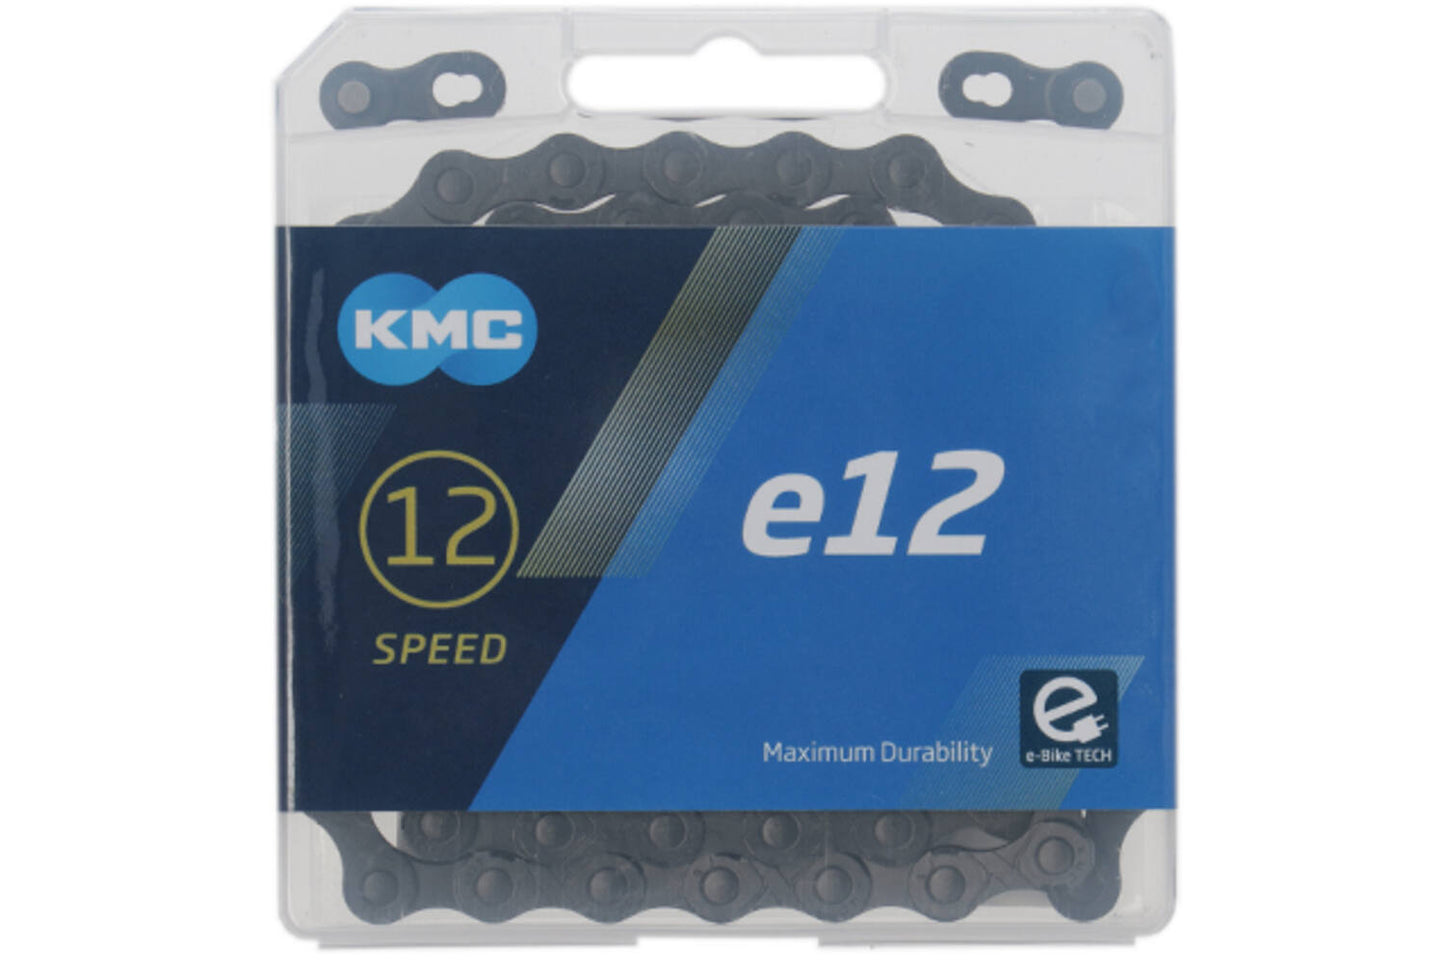 KMC Ketting e12 blacktech, 1 2x11 128, 130 schakels, 5.2mm pin, 12-speed